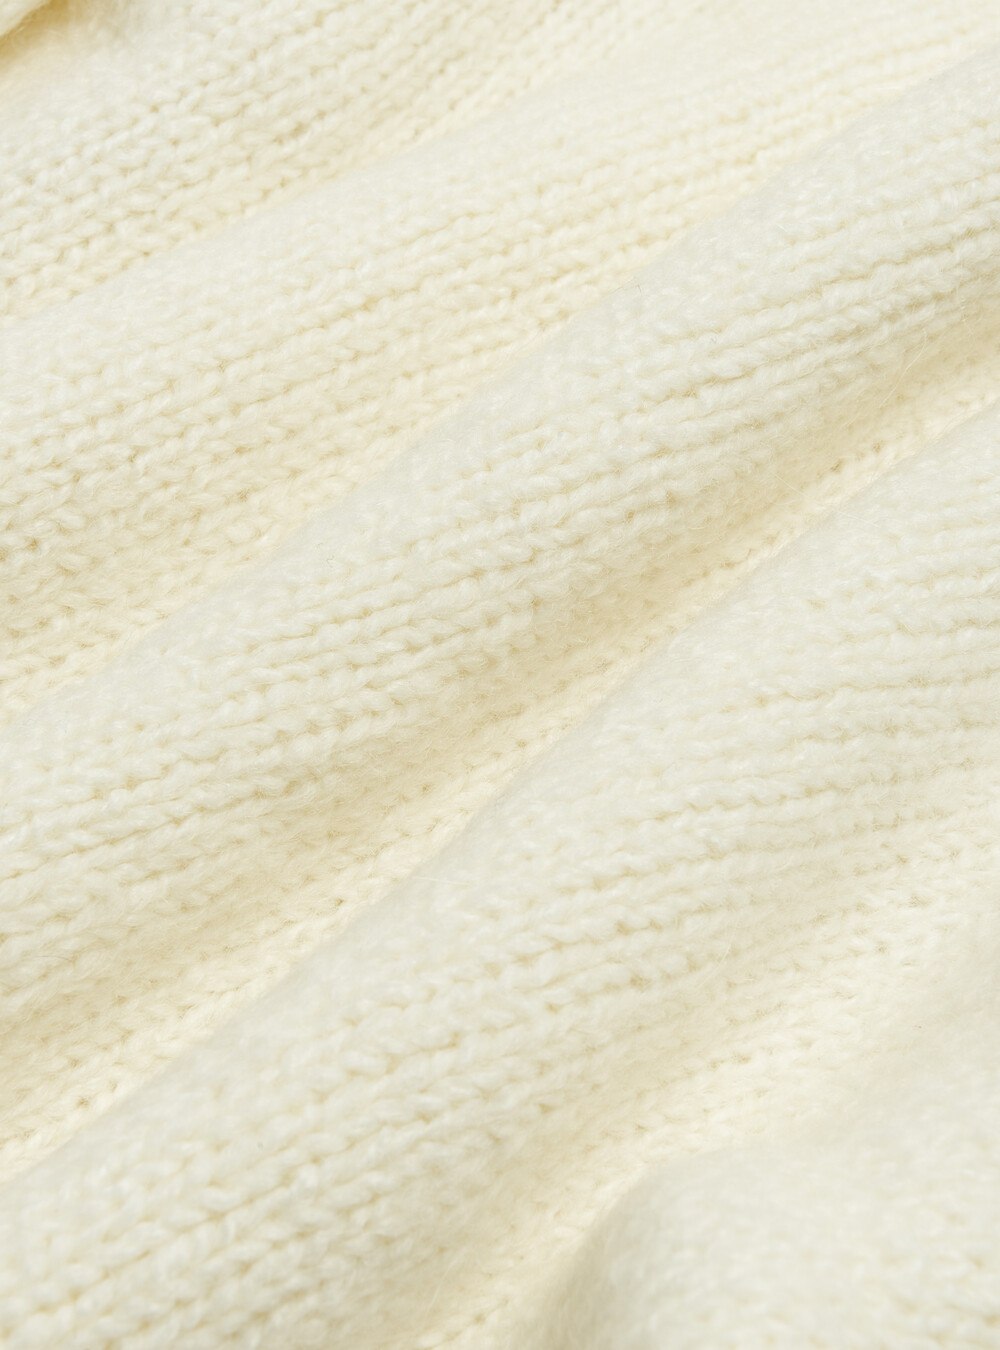 Alpaca wool blend sweater | Gutteridge | Men's catalog-gutteridge ...